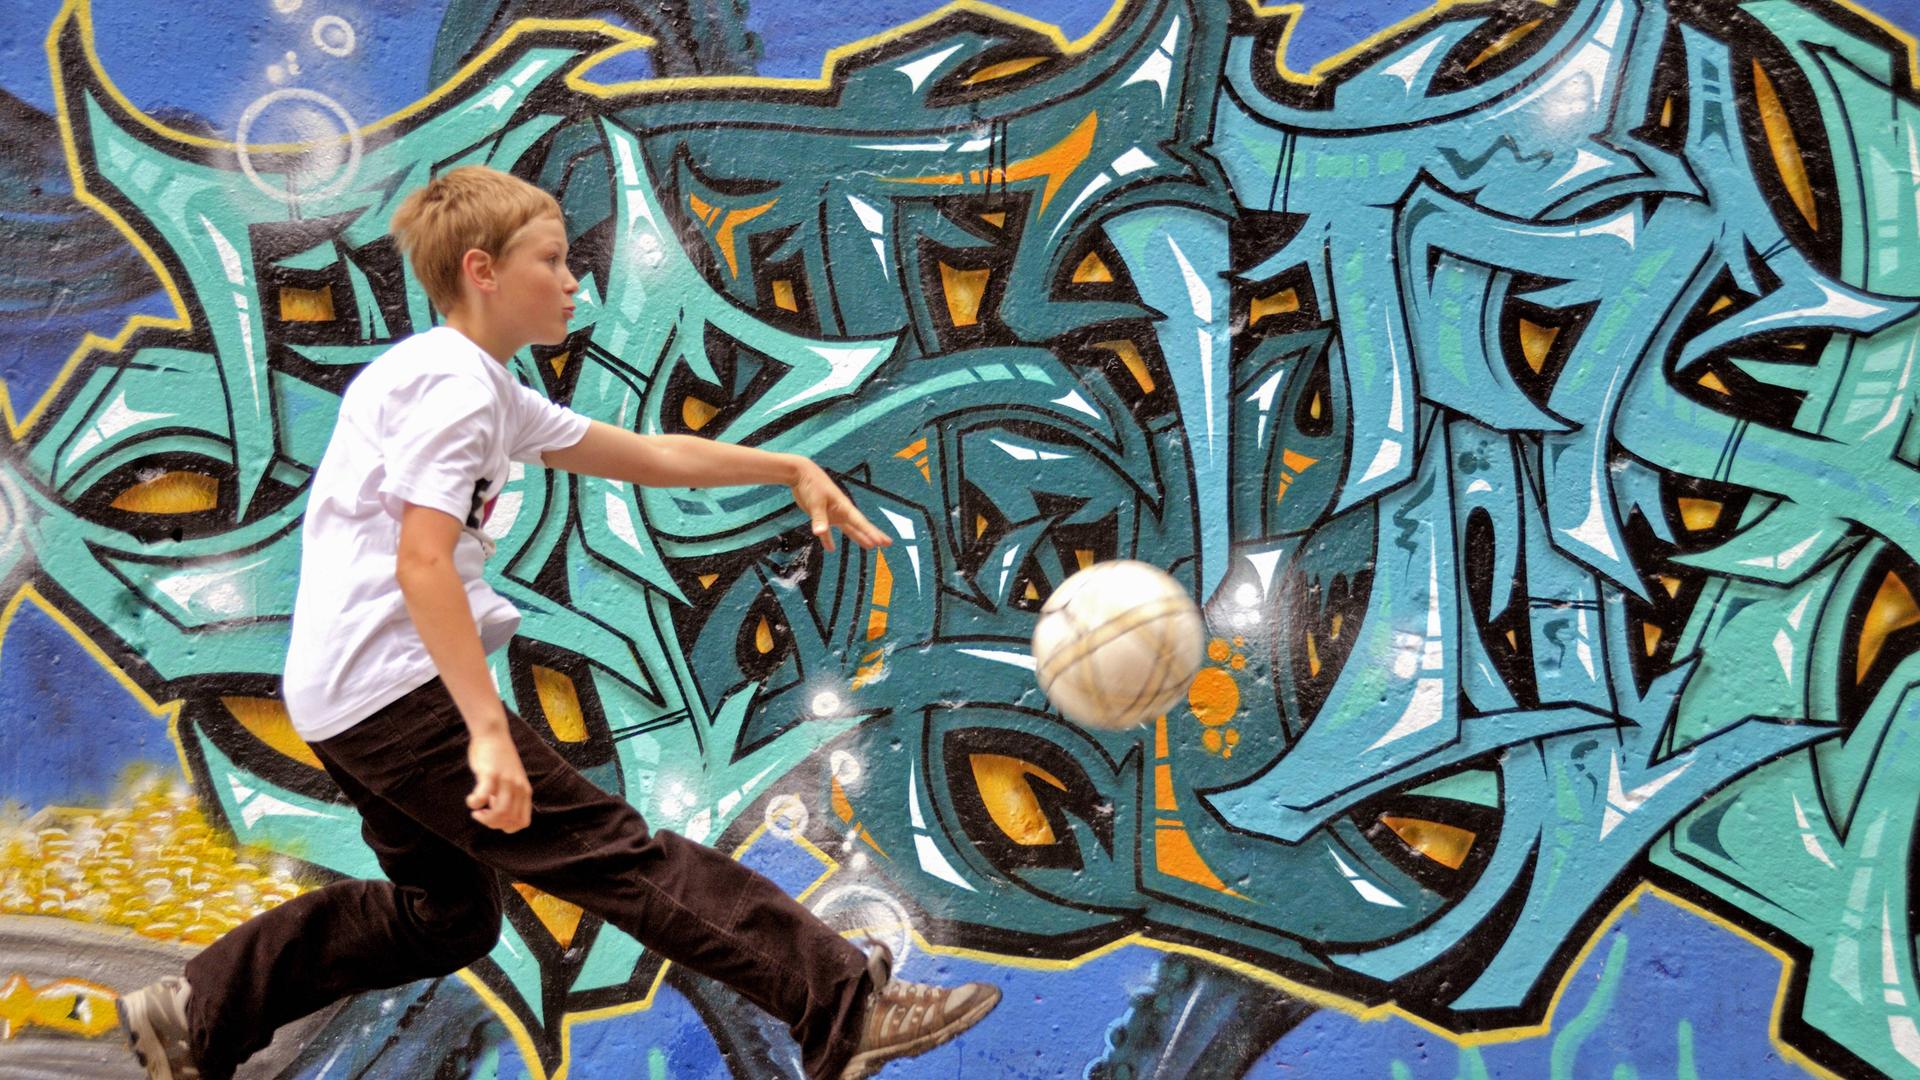 Junge spielt alleine Fussball auf der Strasse vor einer Graffitiwand